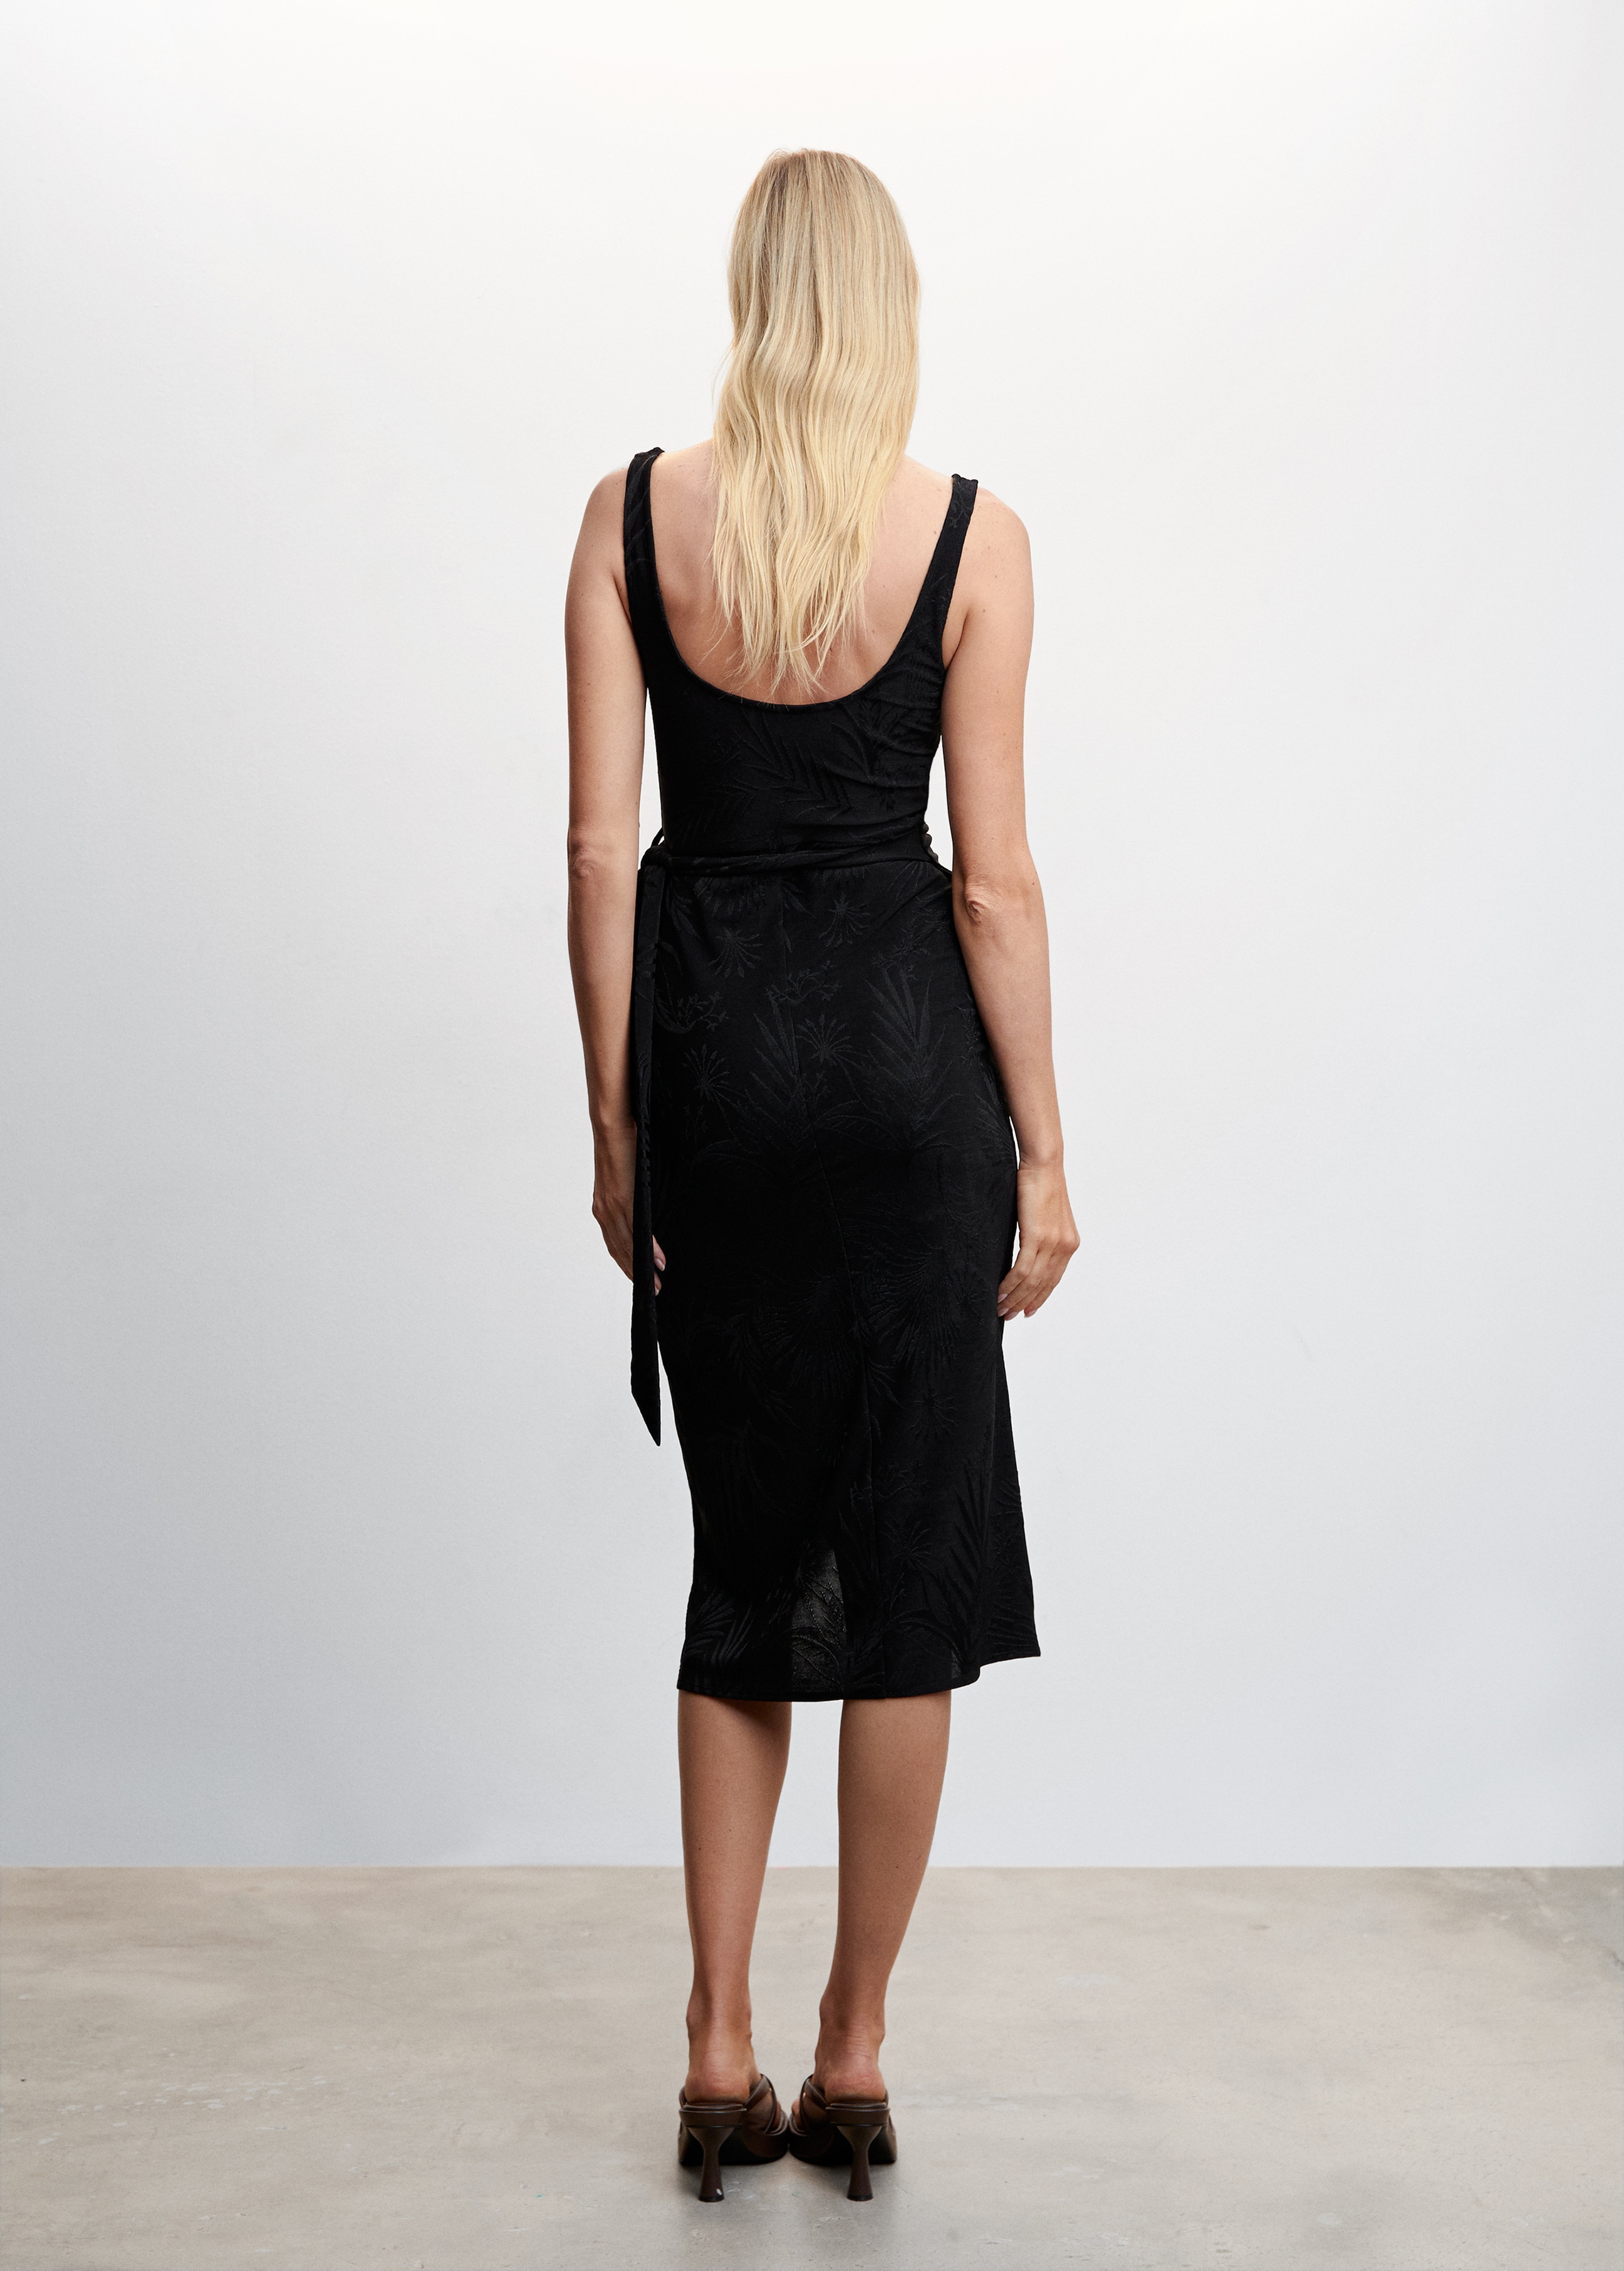 Jacquard-Kleid mit Knotendetail - Rückseite des Artikels